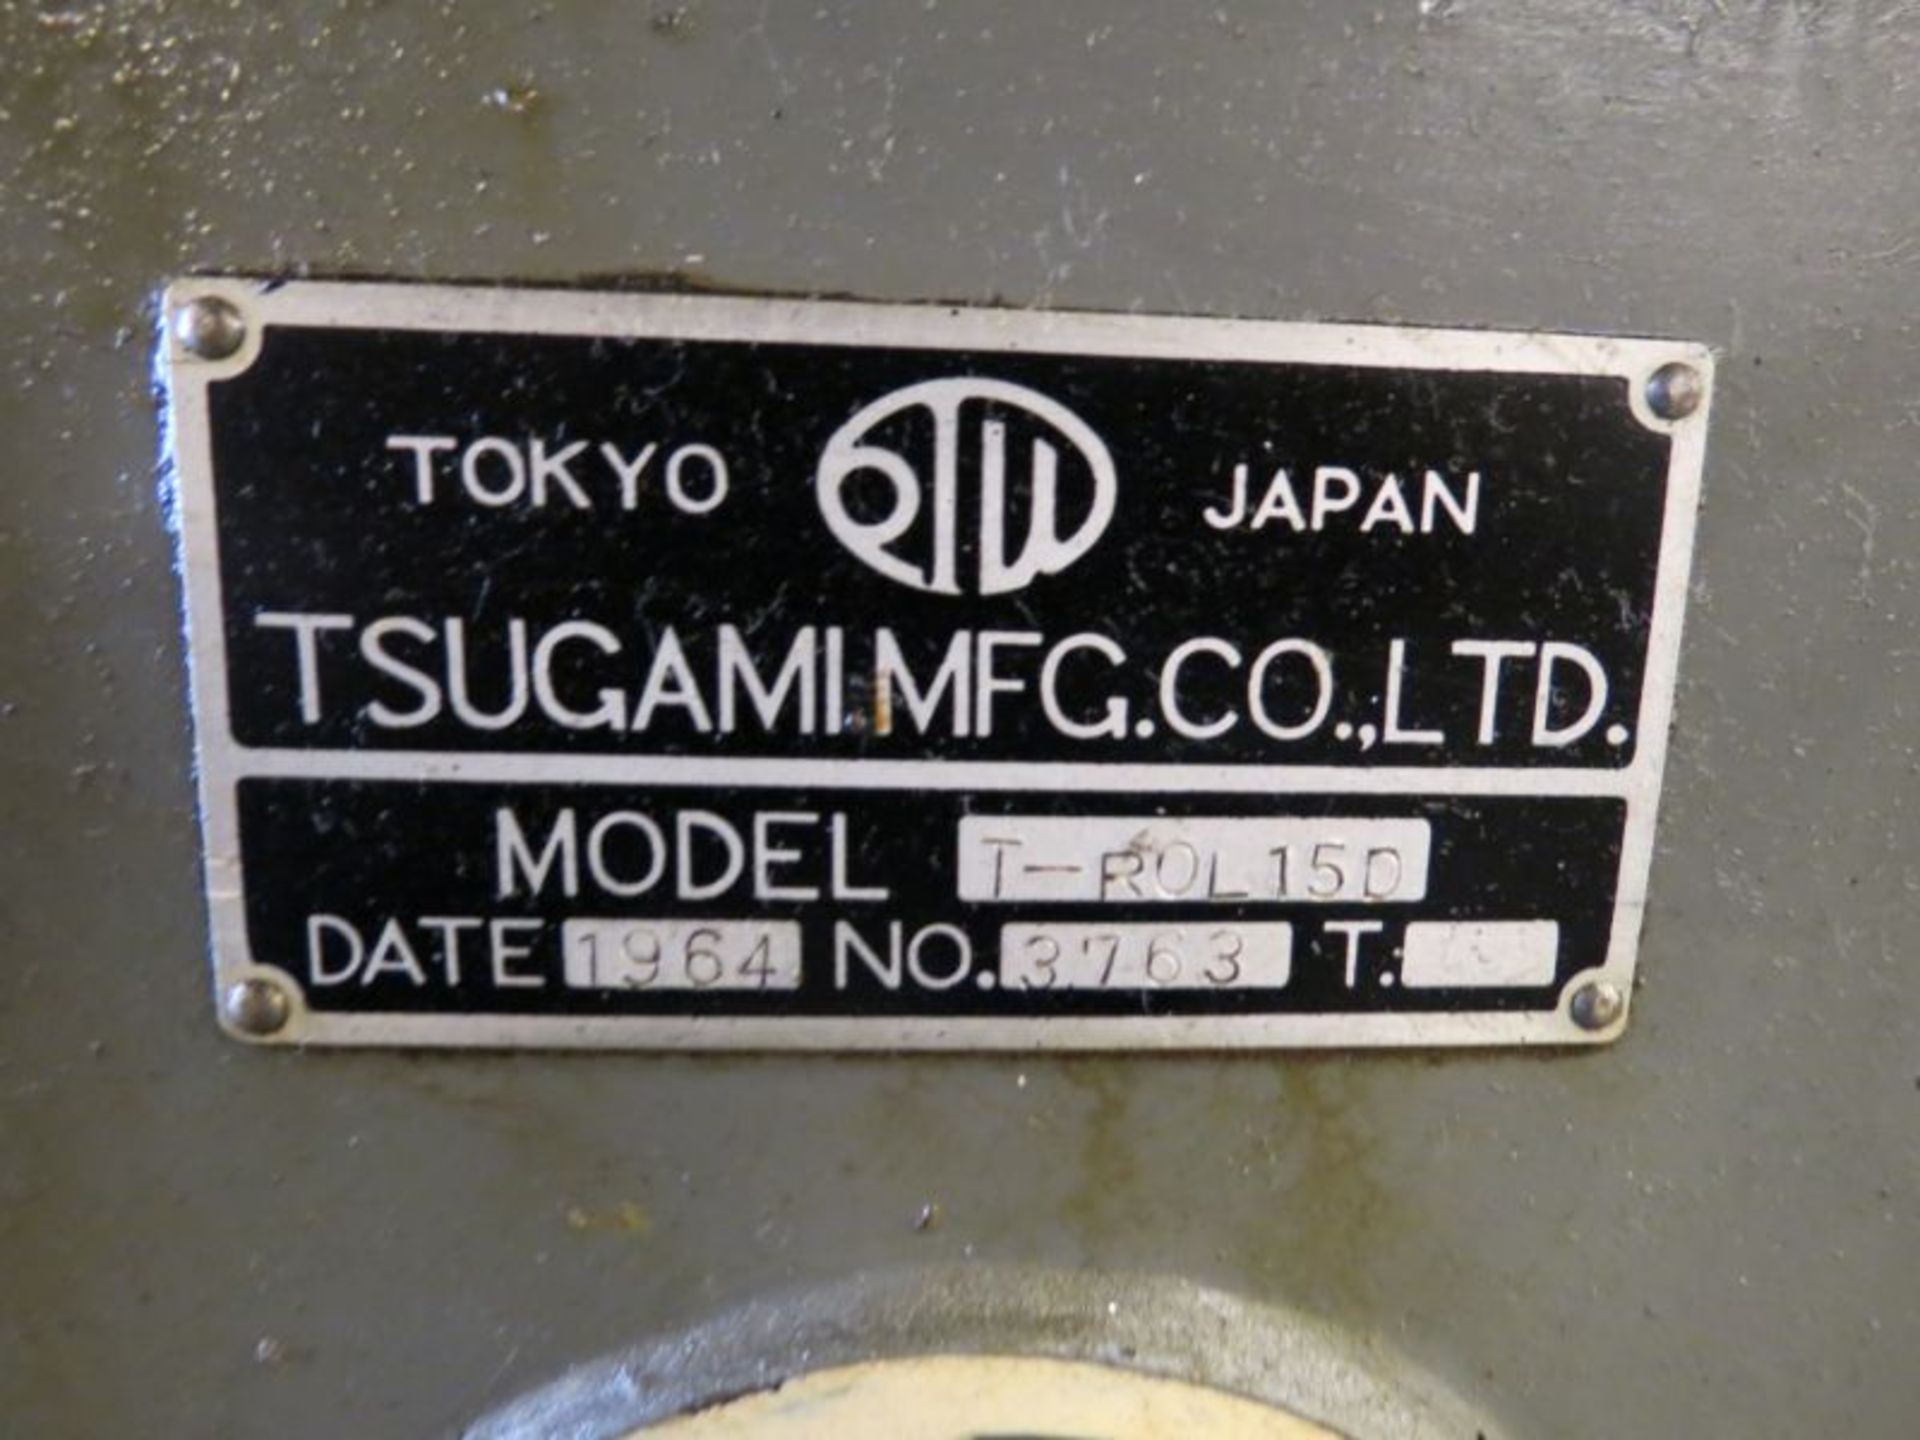 Tsugami T-ROL150 Tread Roller, w. Dies, s/n 3763 - Image 9 of 9